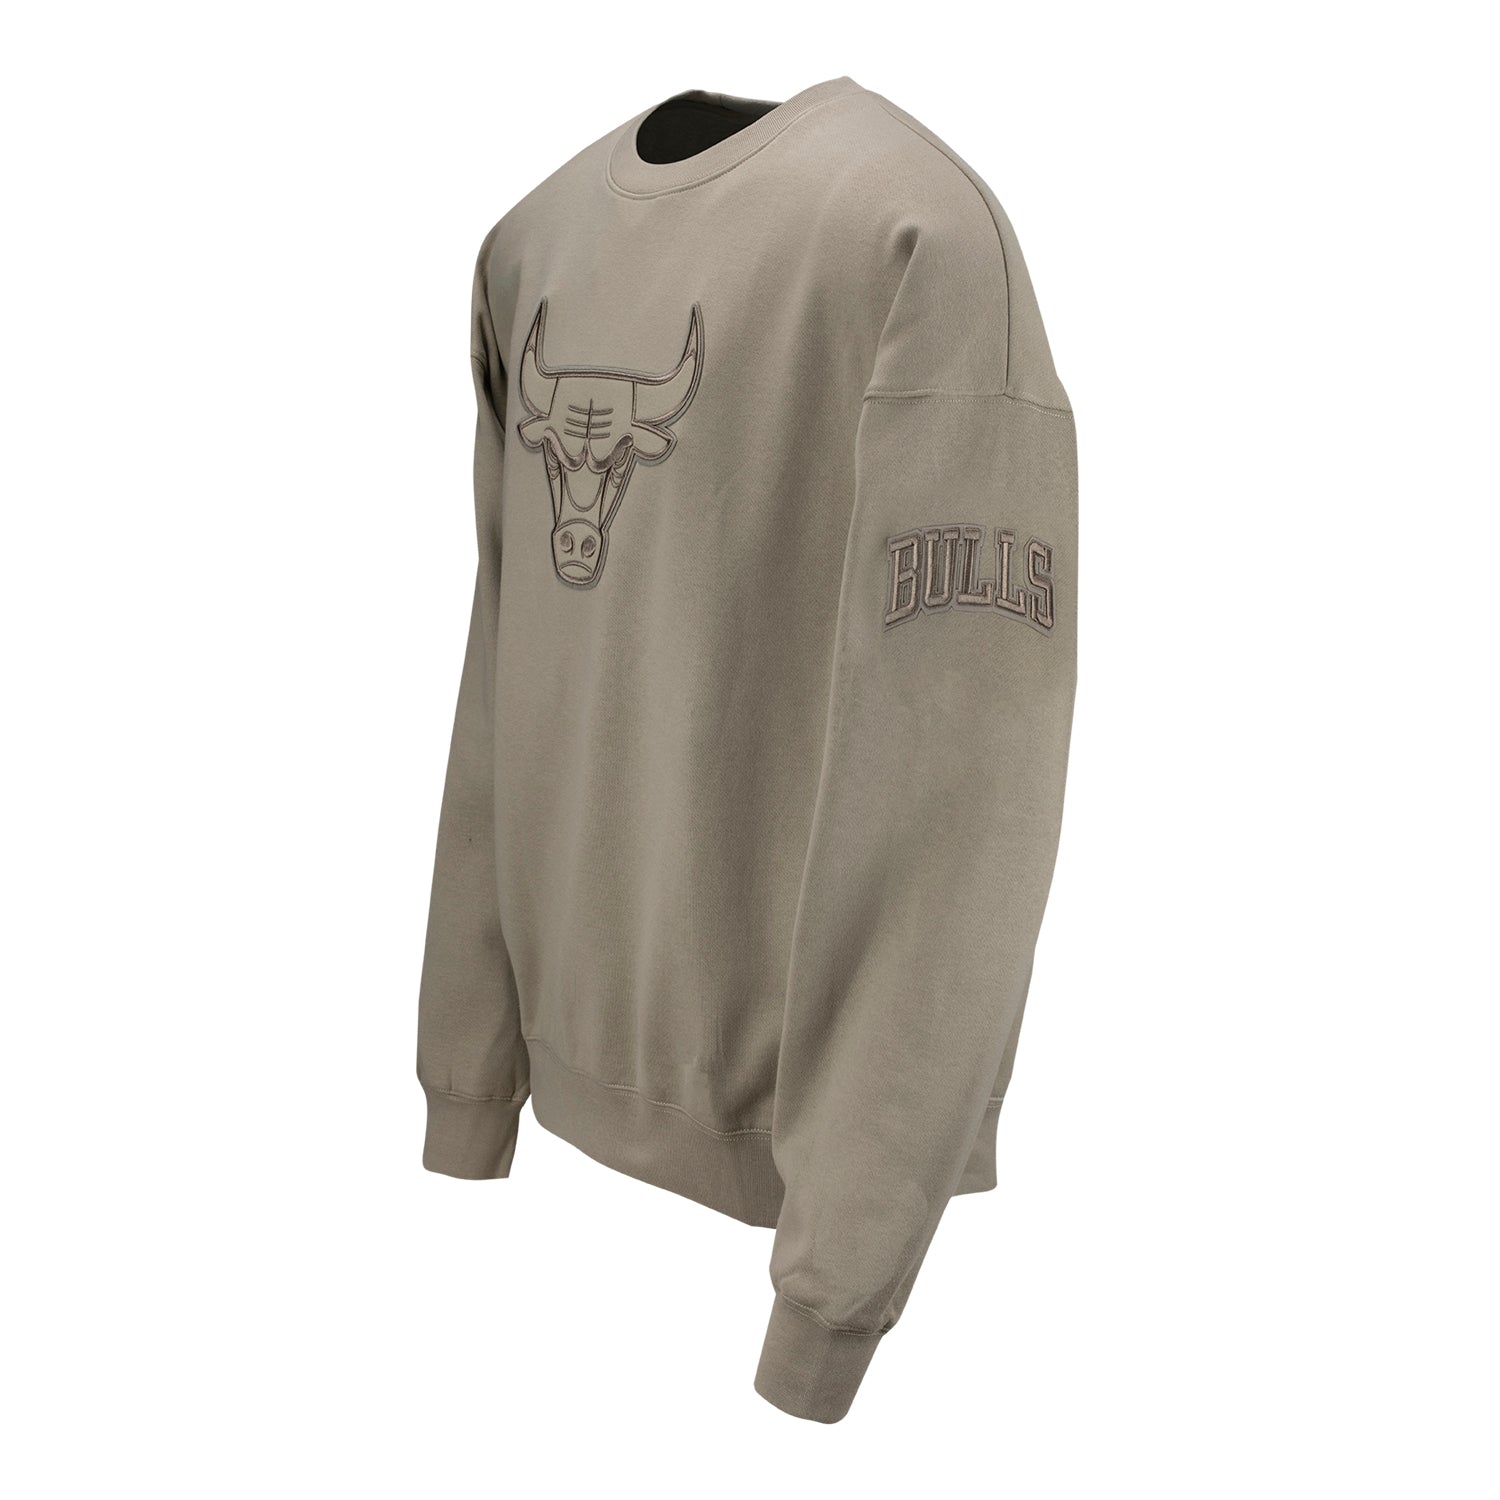 NBA Chicago Bulls Licensed Oversize Fit Crew Neck Sweatshirt